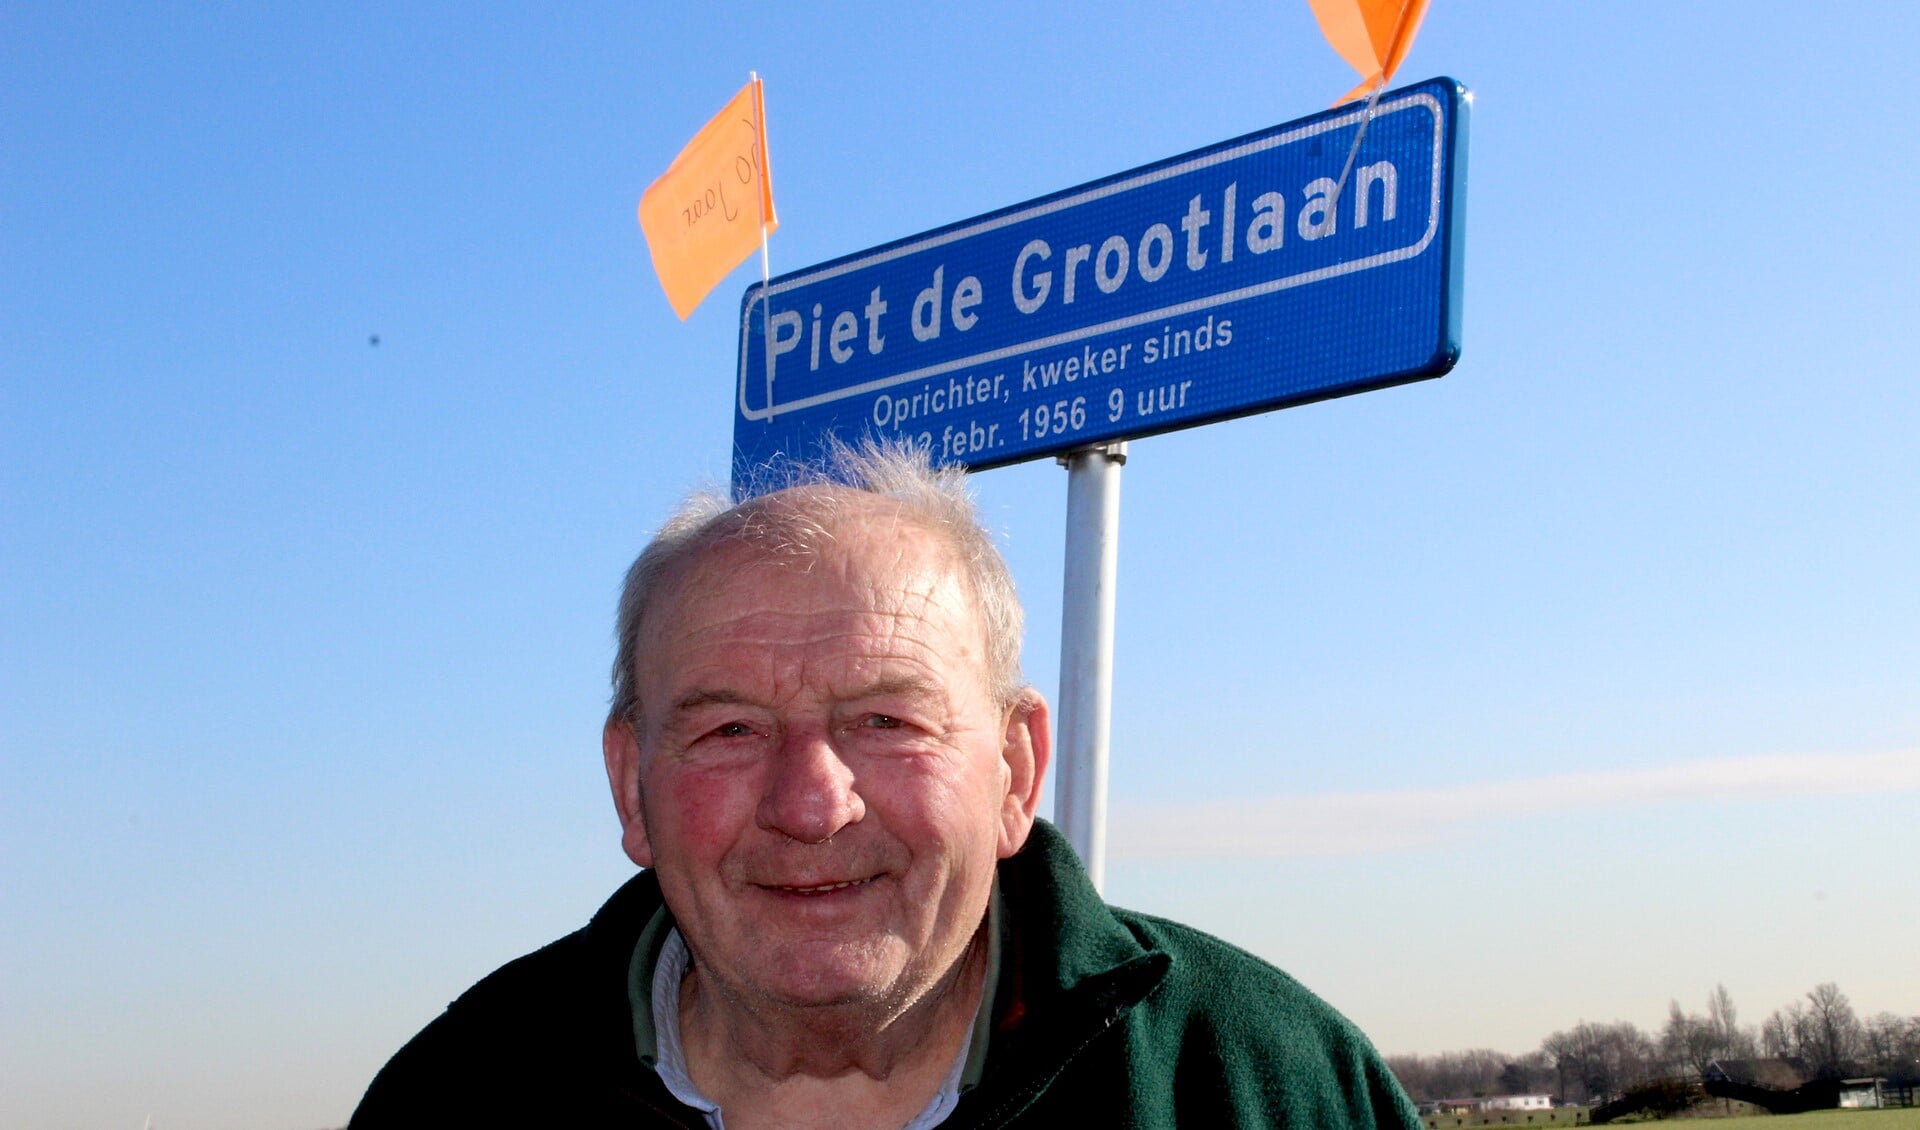 Piet de Groot, 60 jaar tuinder (foto/tekst: Dick Janssen).